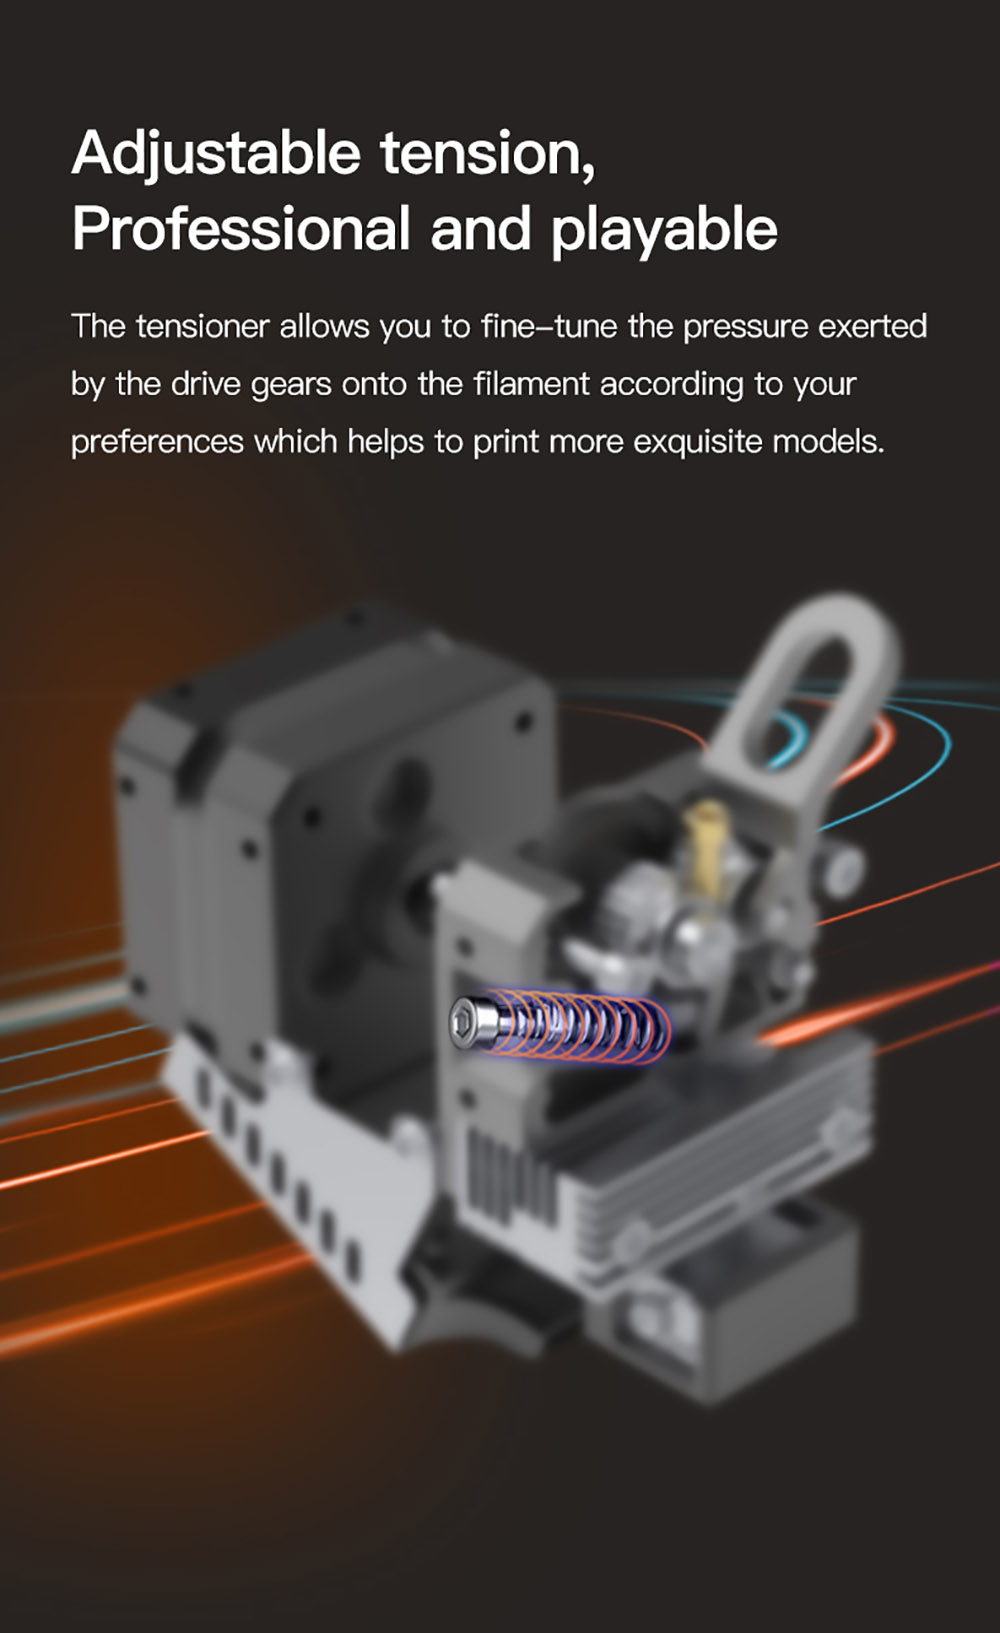 Creality Sprite Extruder-Pro Kit tout métal pour pièce d'imprimante 3D